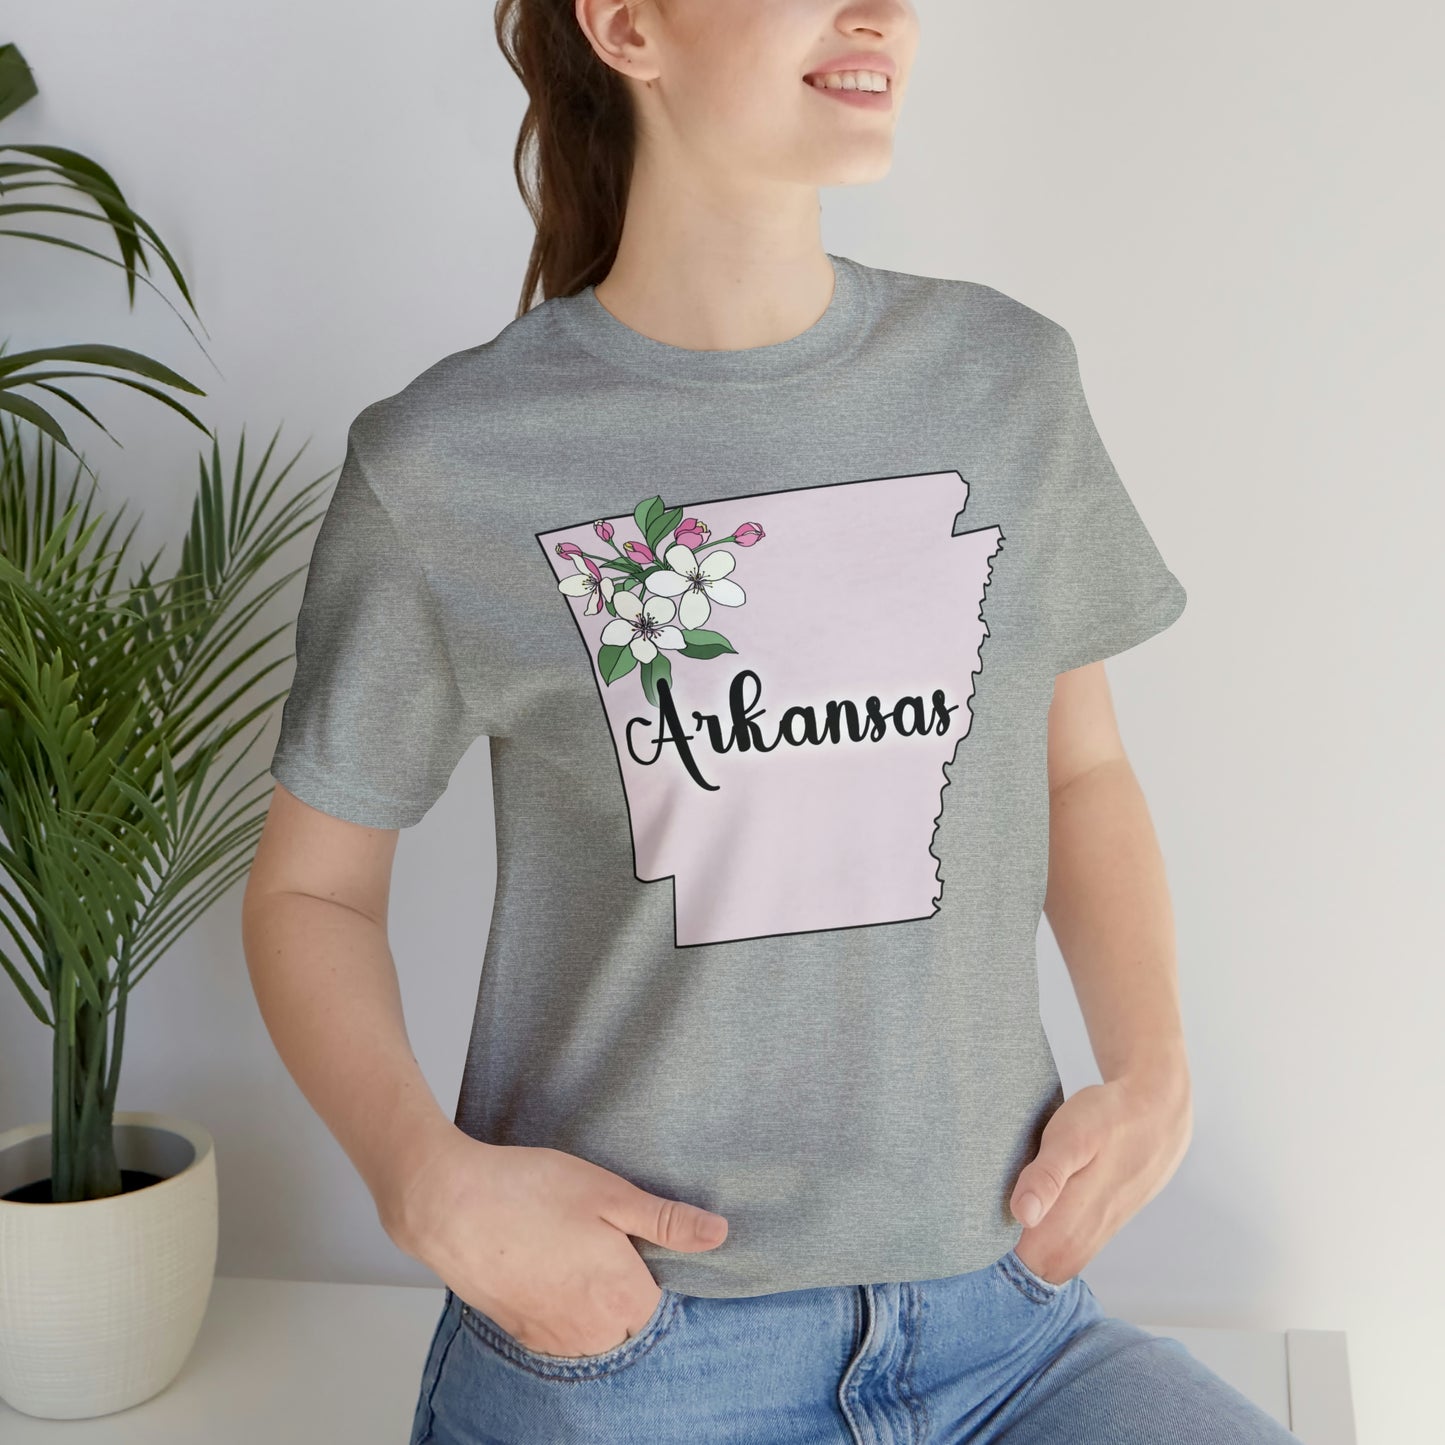 Arkansas State Flower Short Sleeve T-shirt